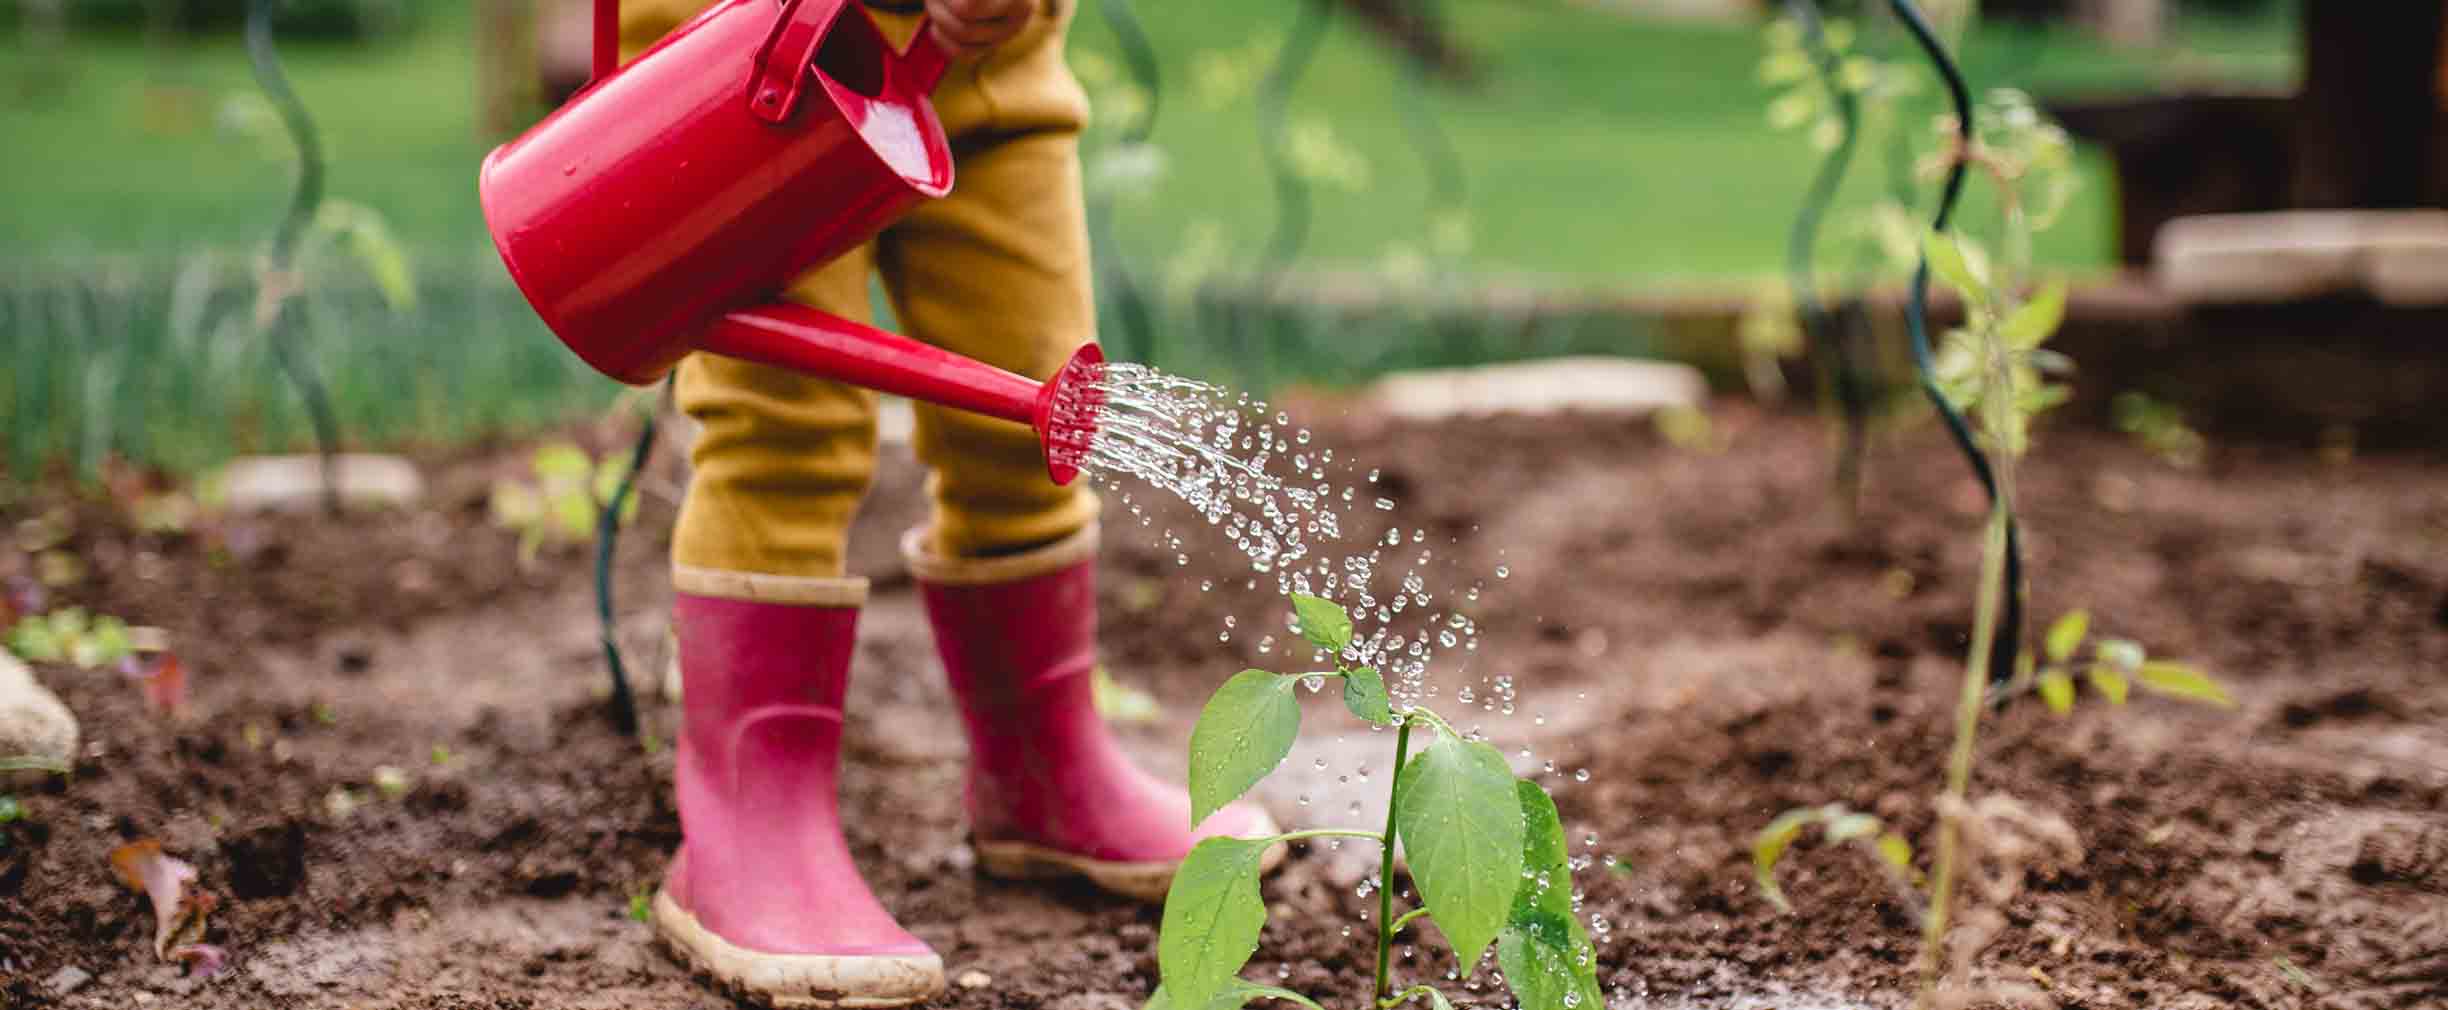 niño con botas de lluvia regando plantas